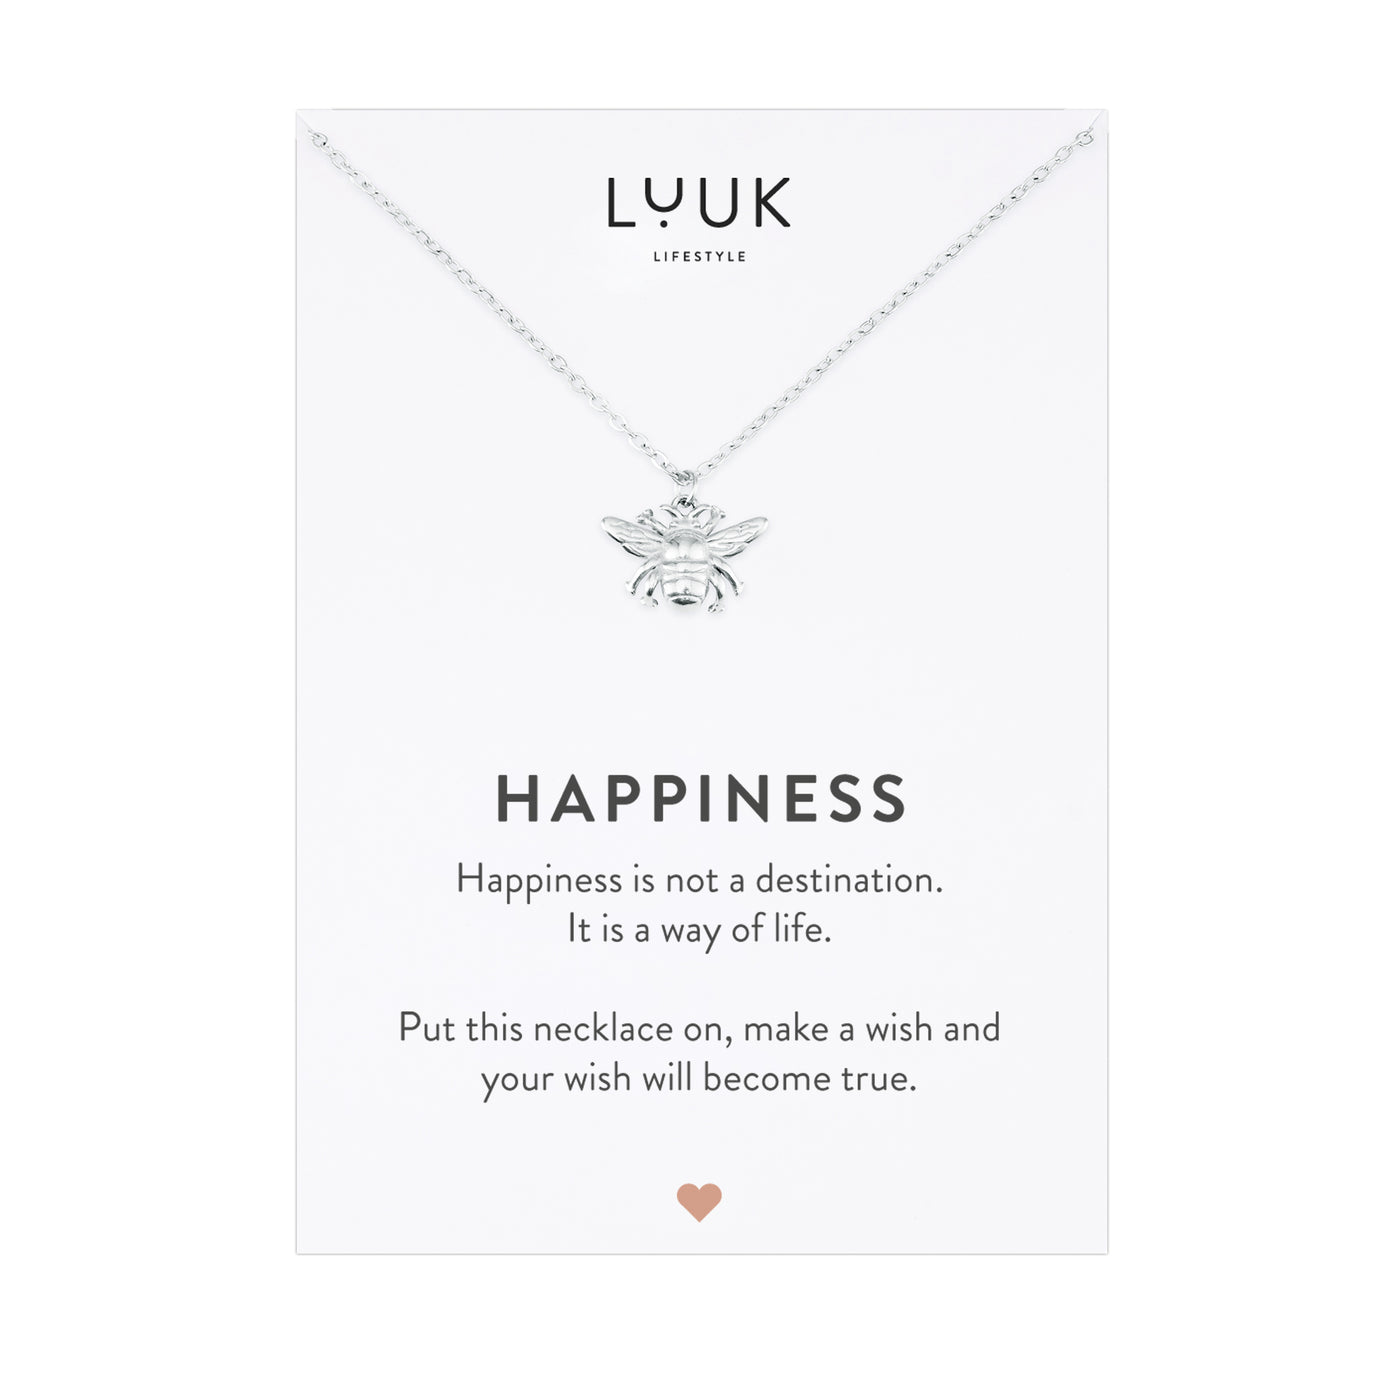 Silberne Halskette mit Bienen Anhänger auf Happiness Karte von der Marke Luuk Lifestlye